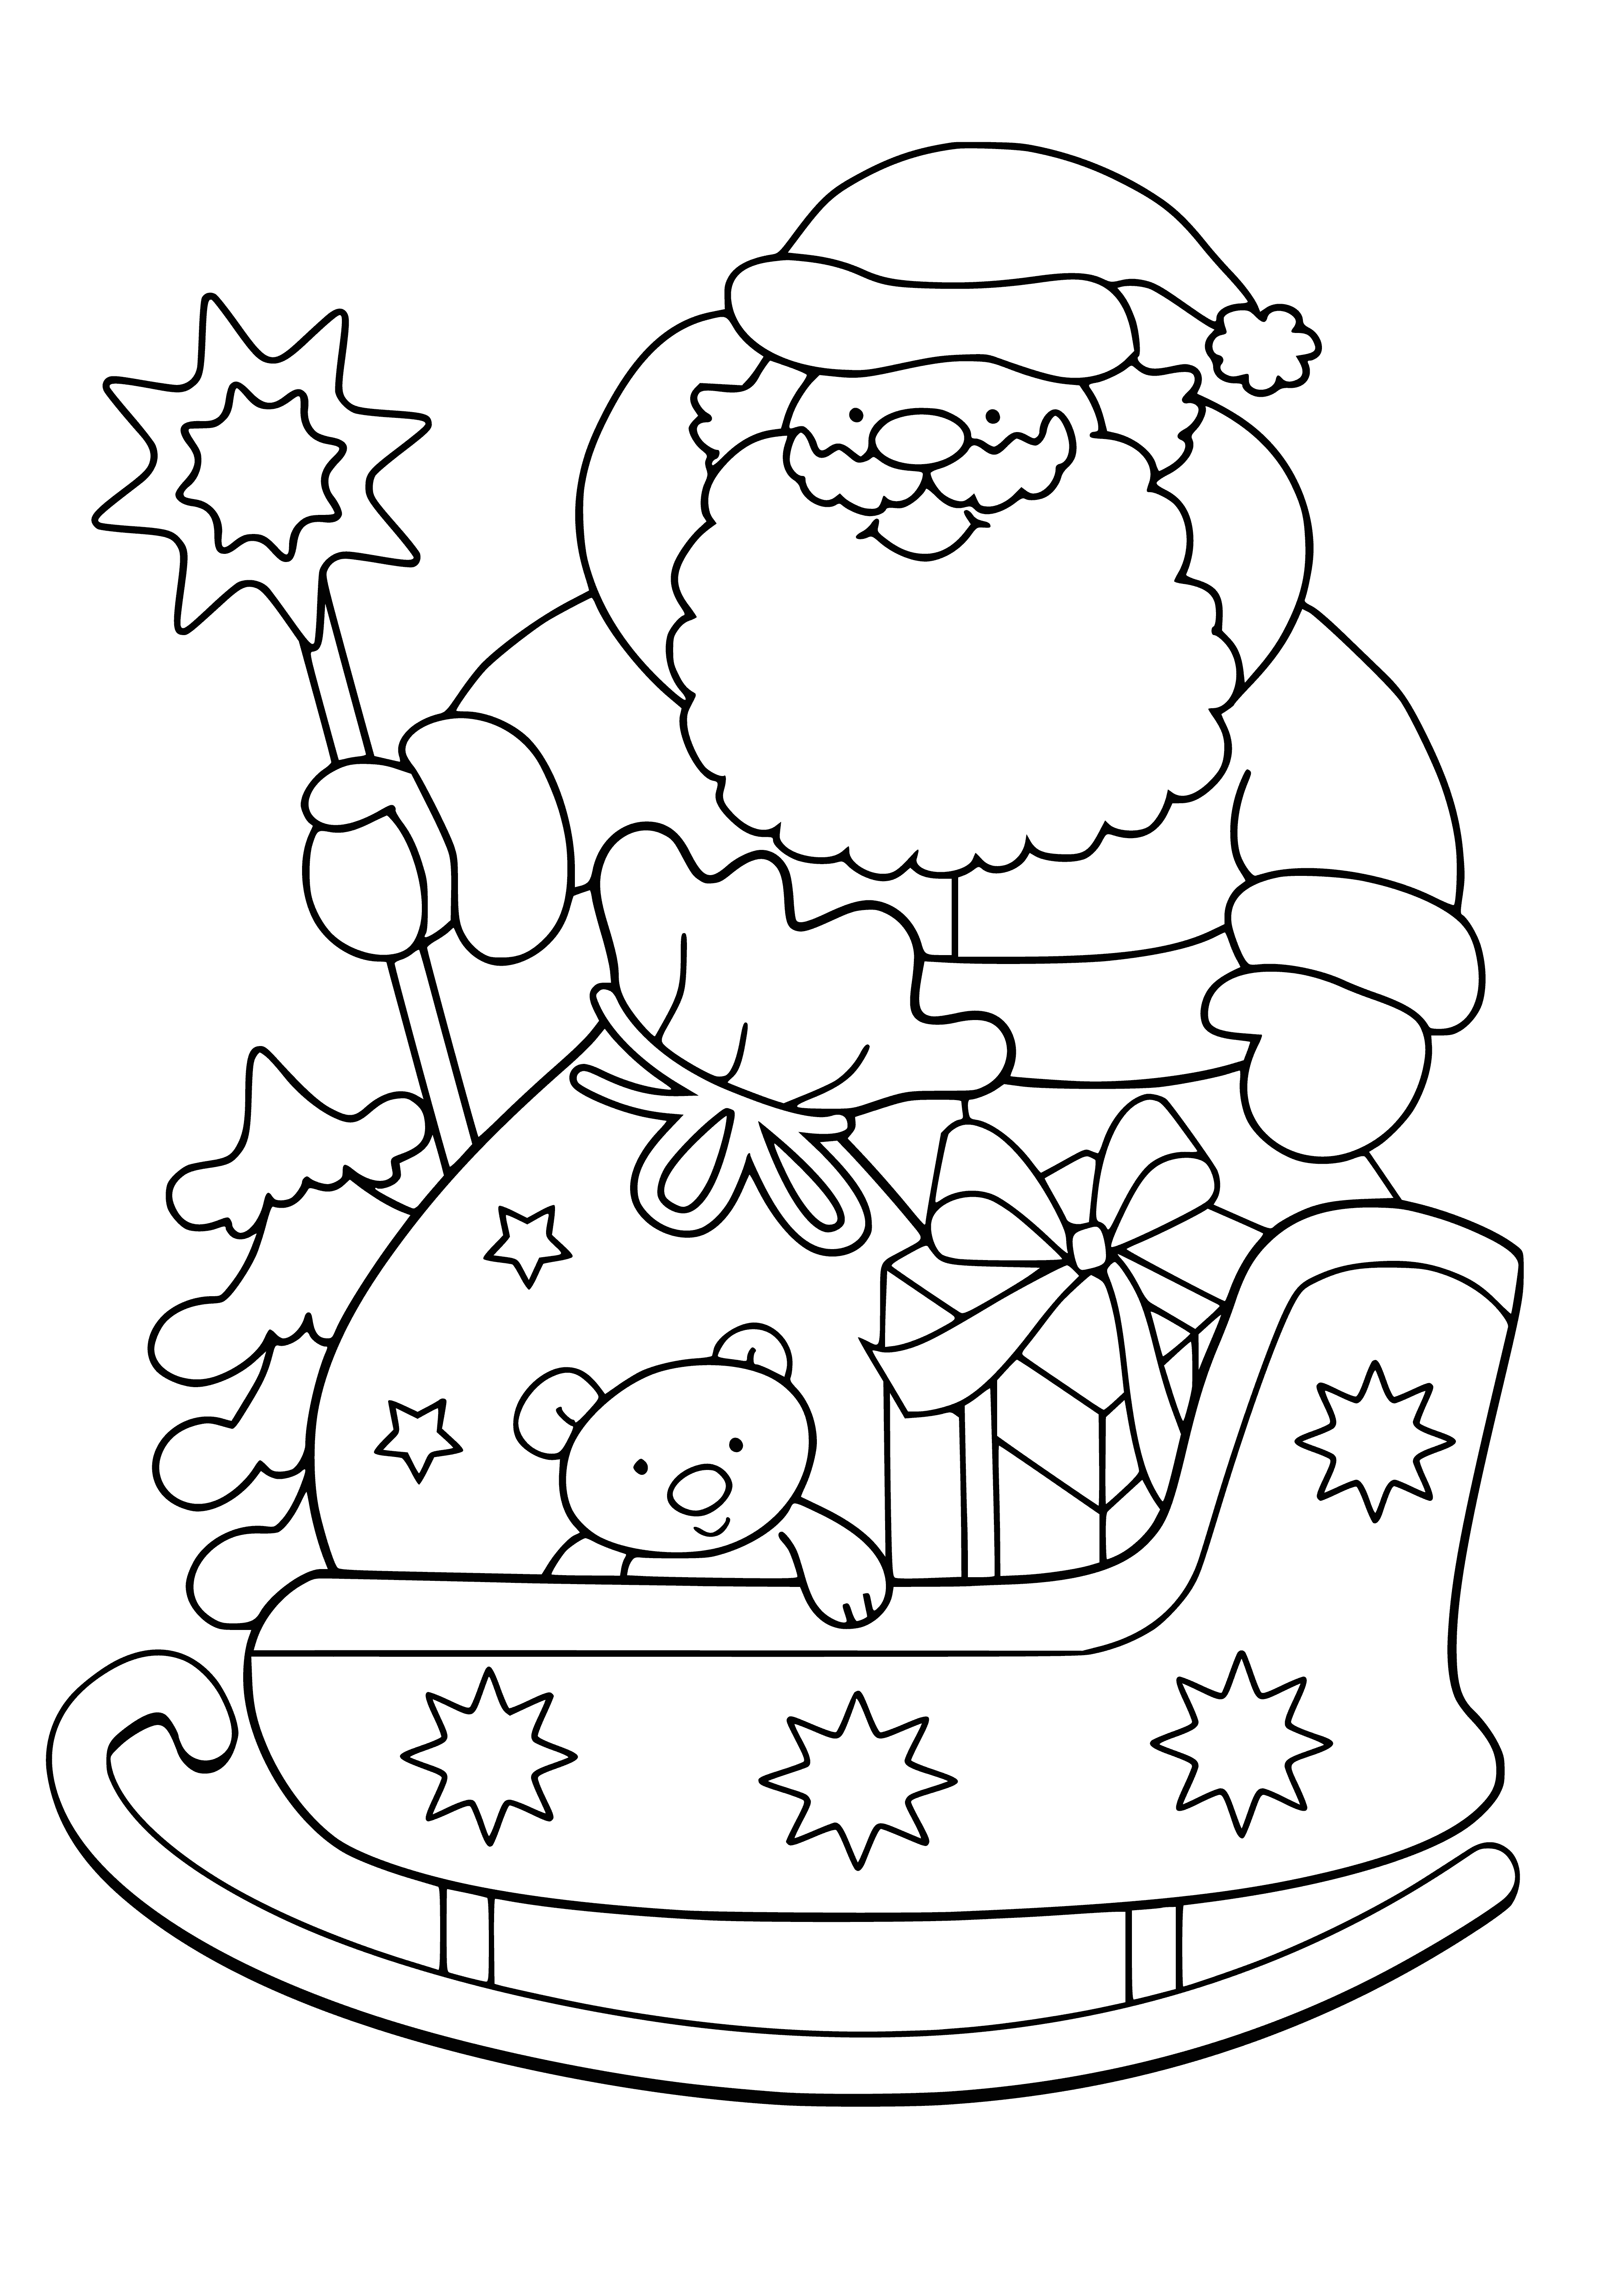 Święty Mikołaj i sanie z prezentami kolorowanka